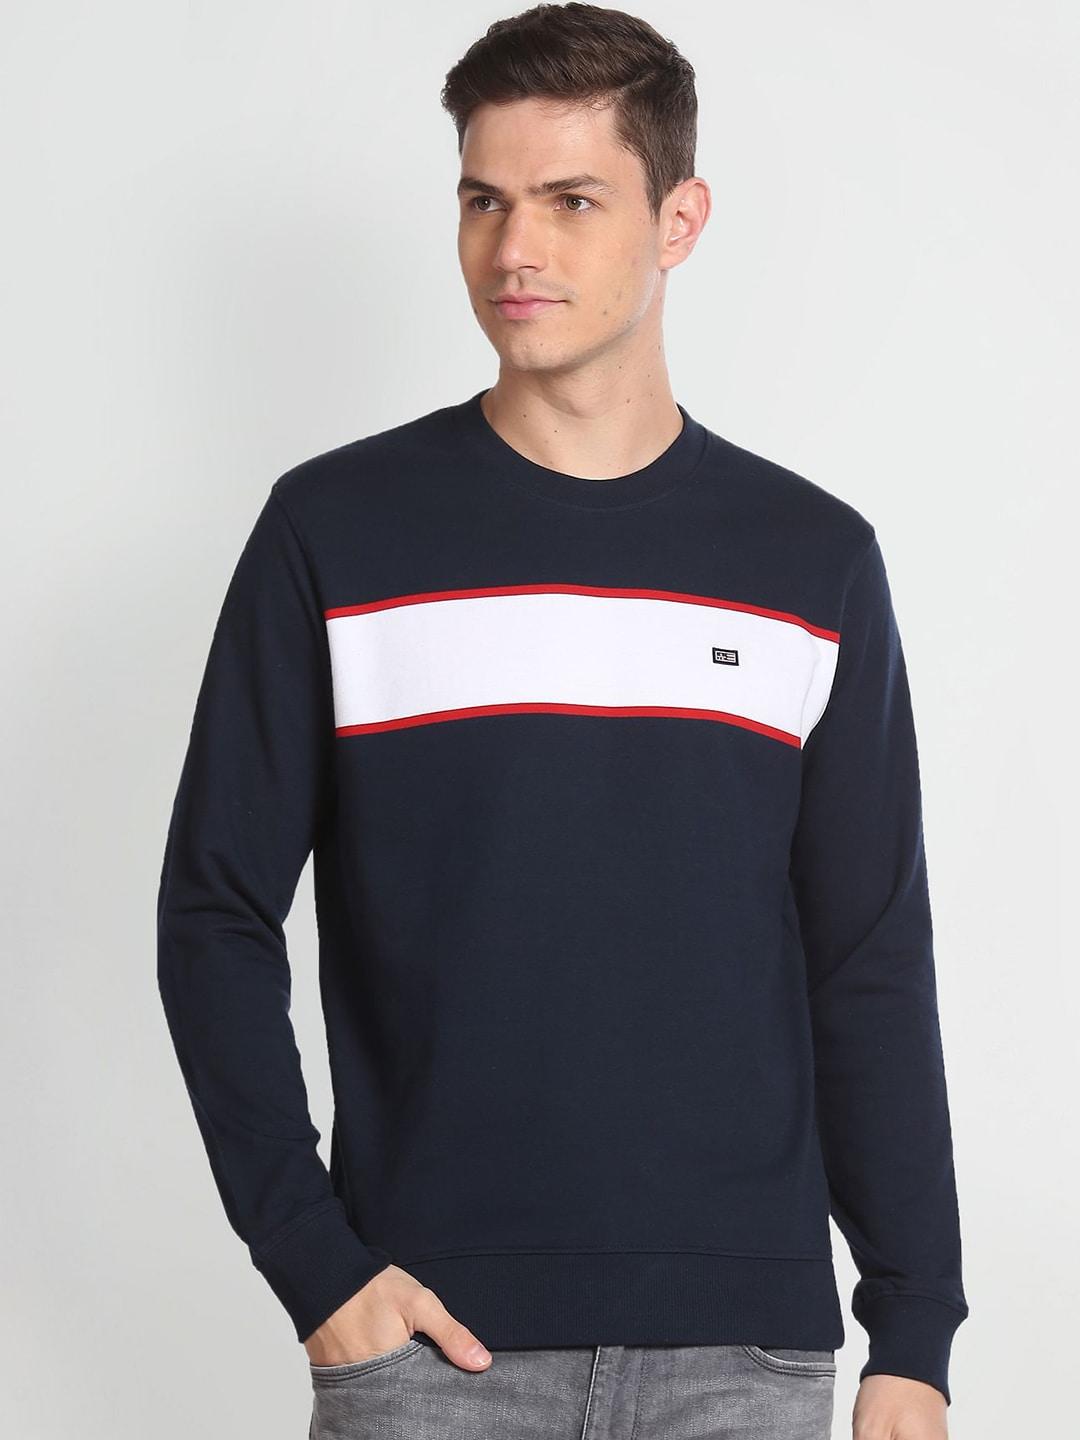 arrow-sport-round-neck-pure-cotton-sweatshirt